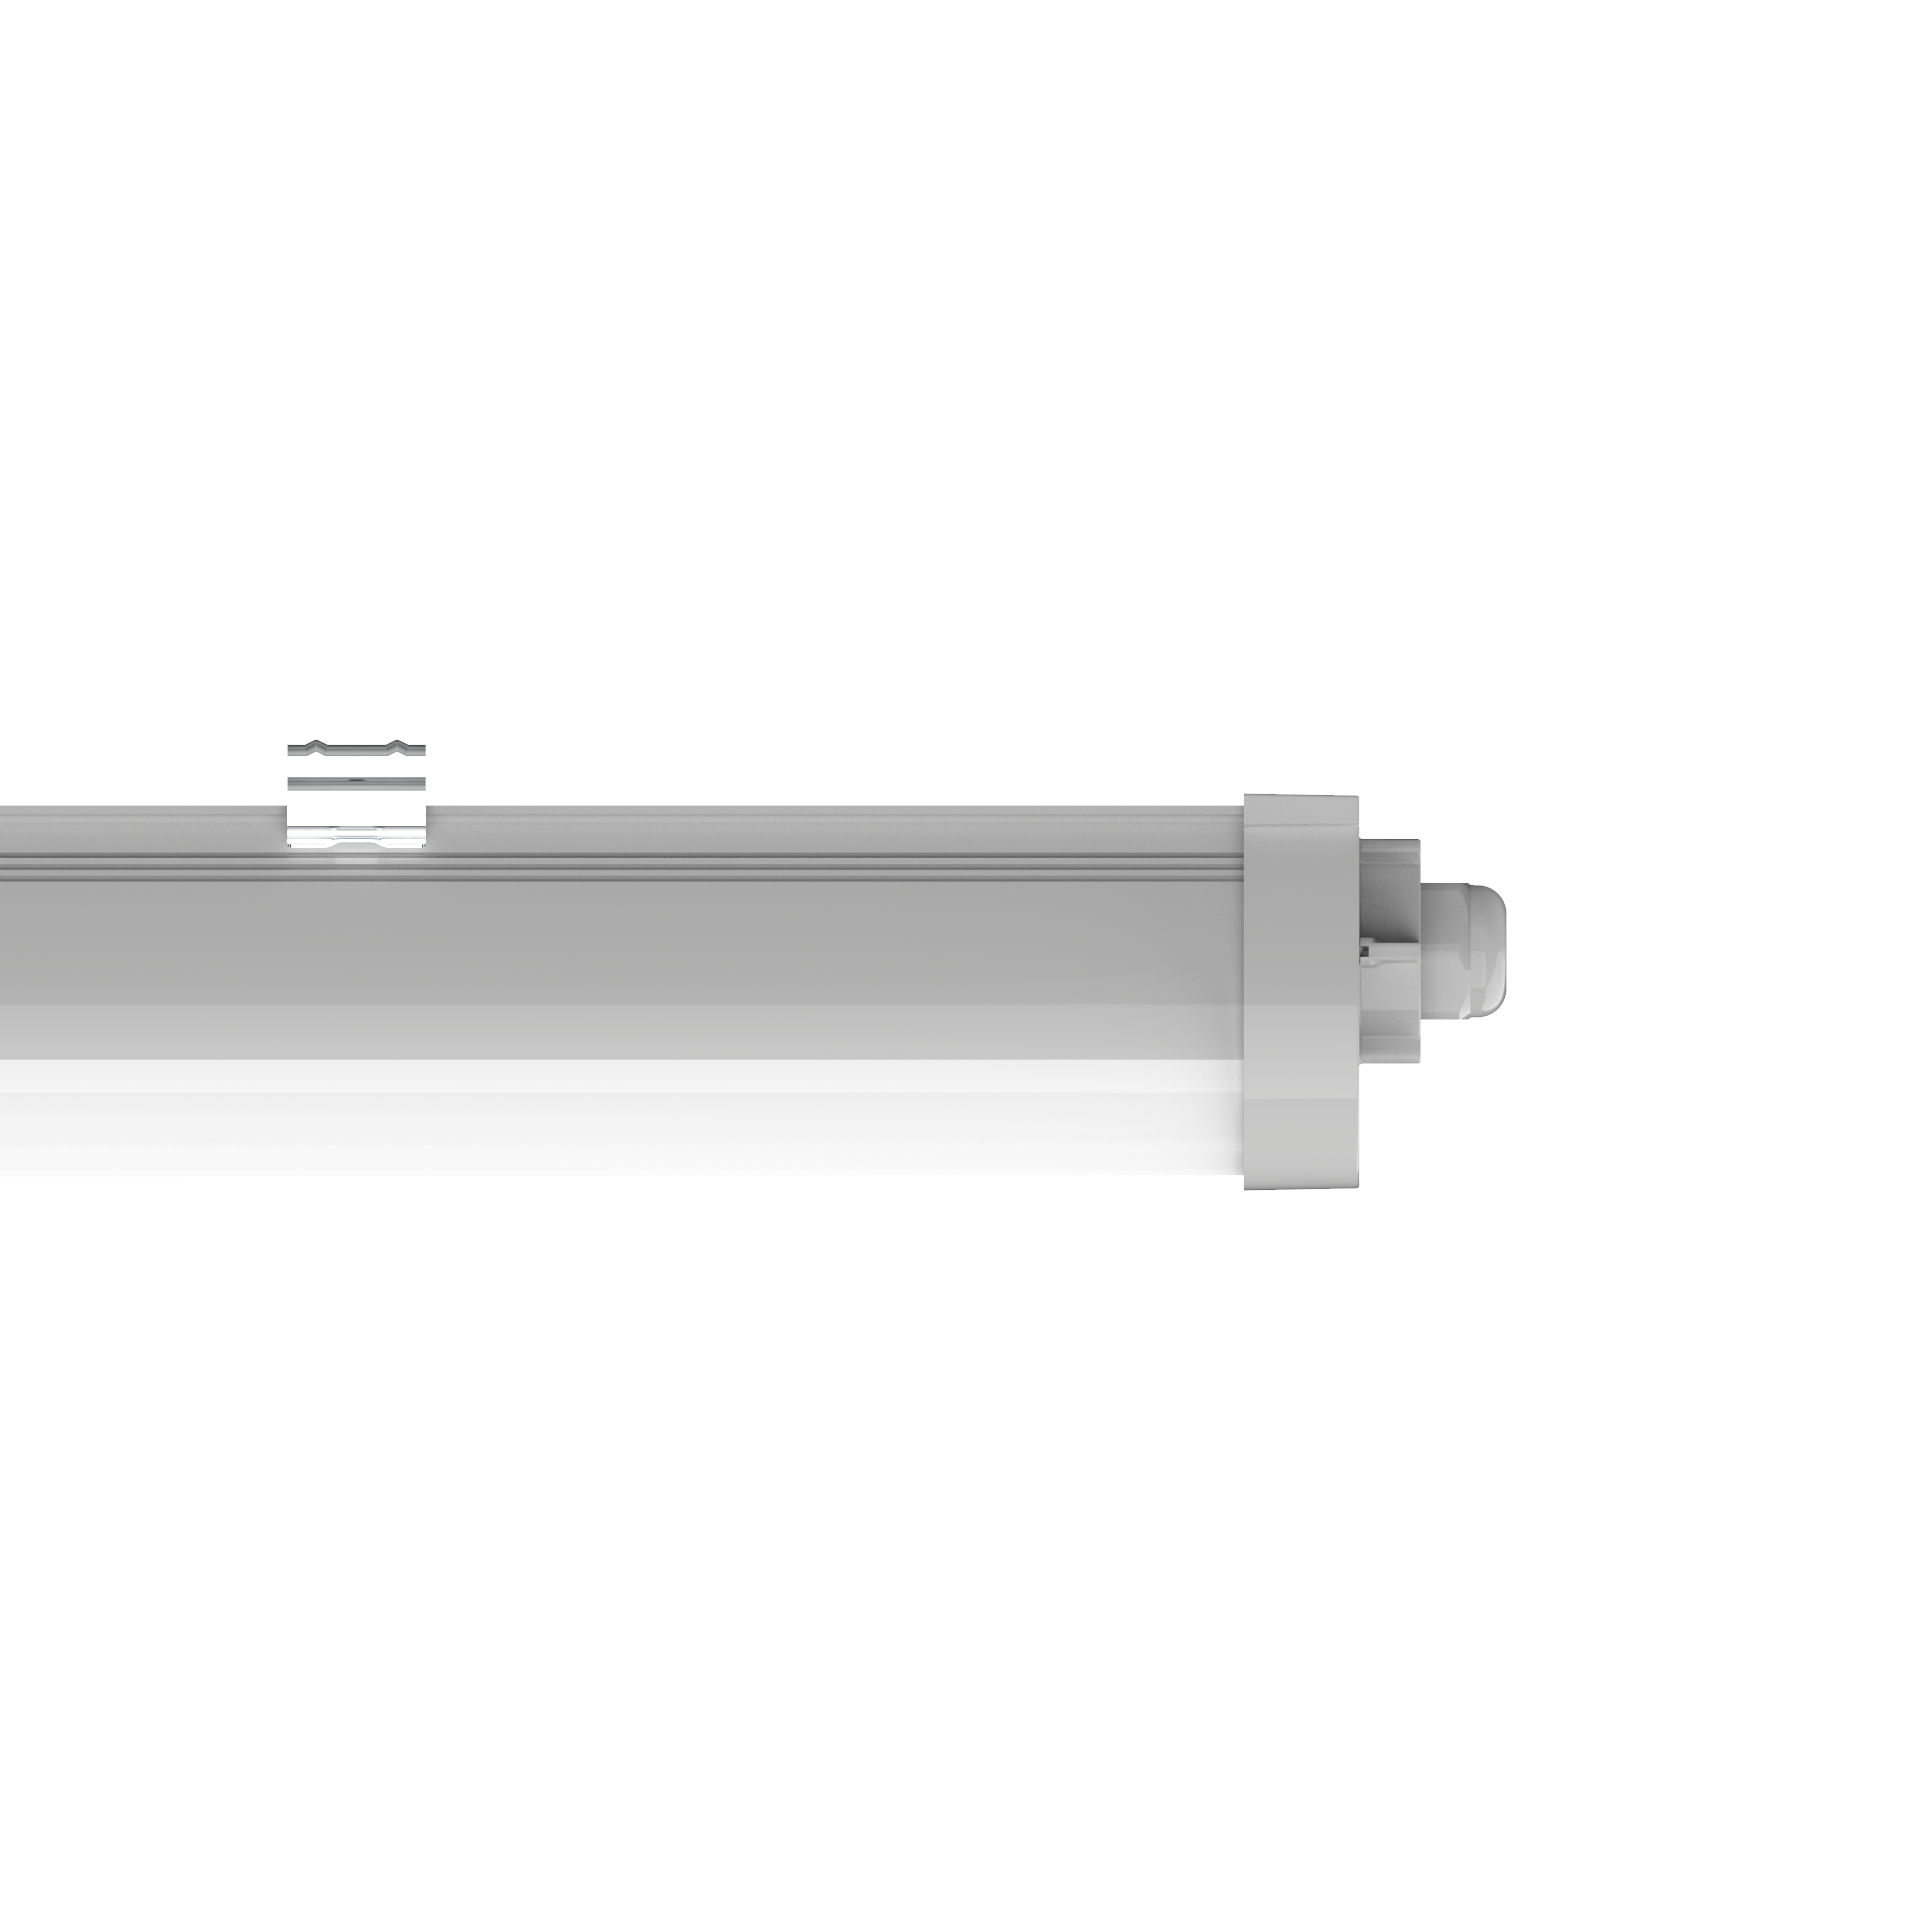 Engel LED Feuchtraumleuchte 60-120cm - IP65 Wasserdicht, mit 5 Jahren Garantie